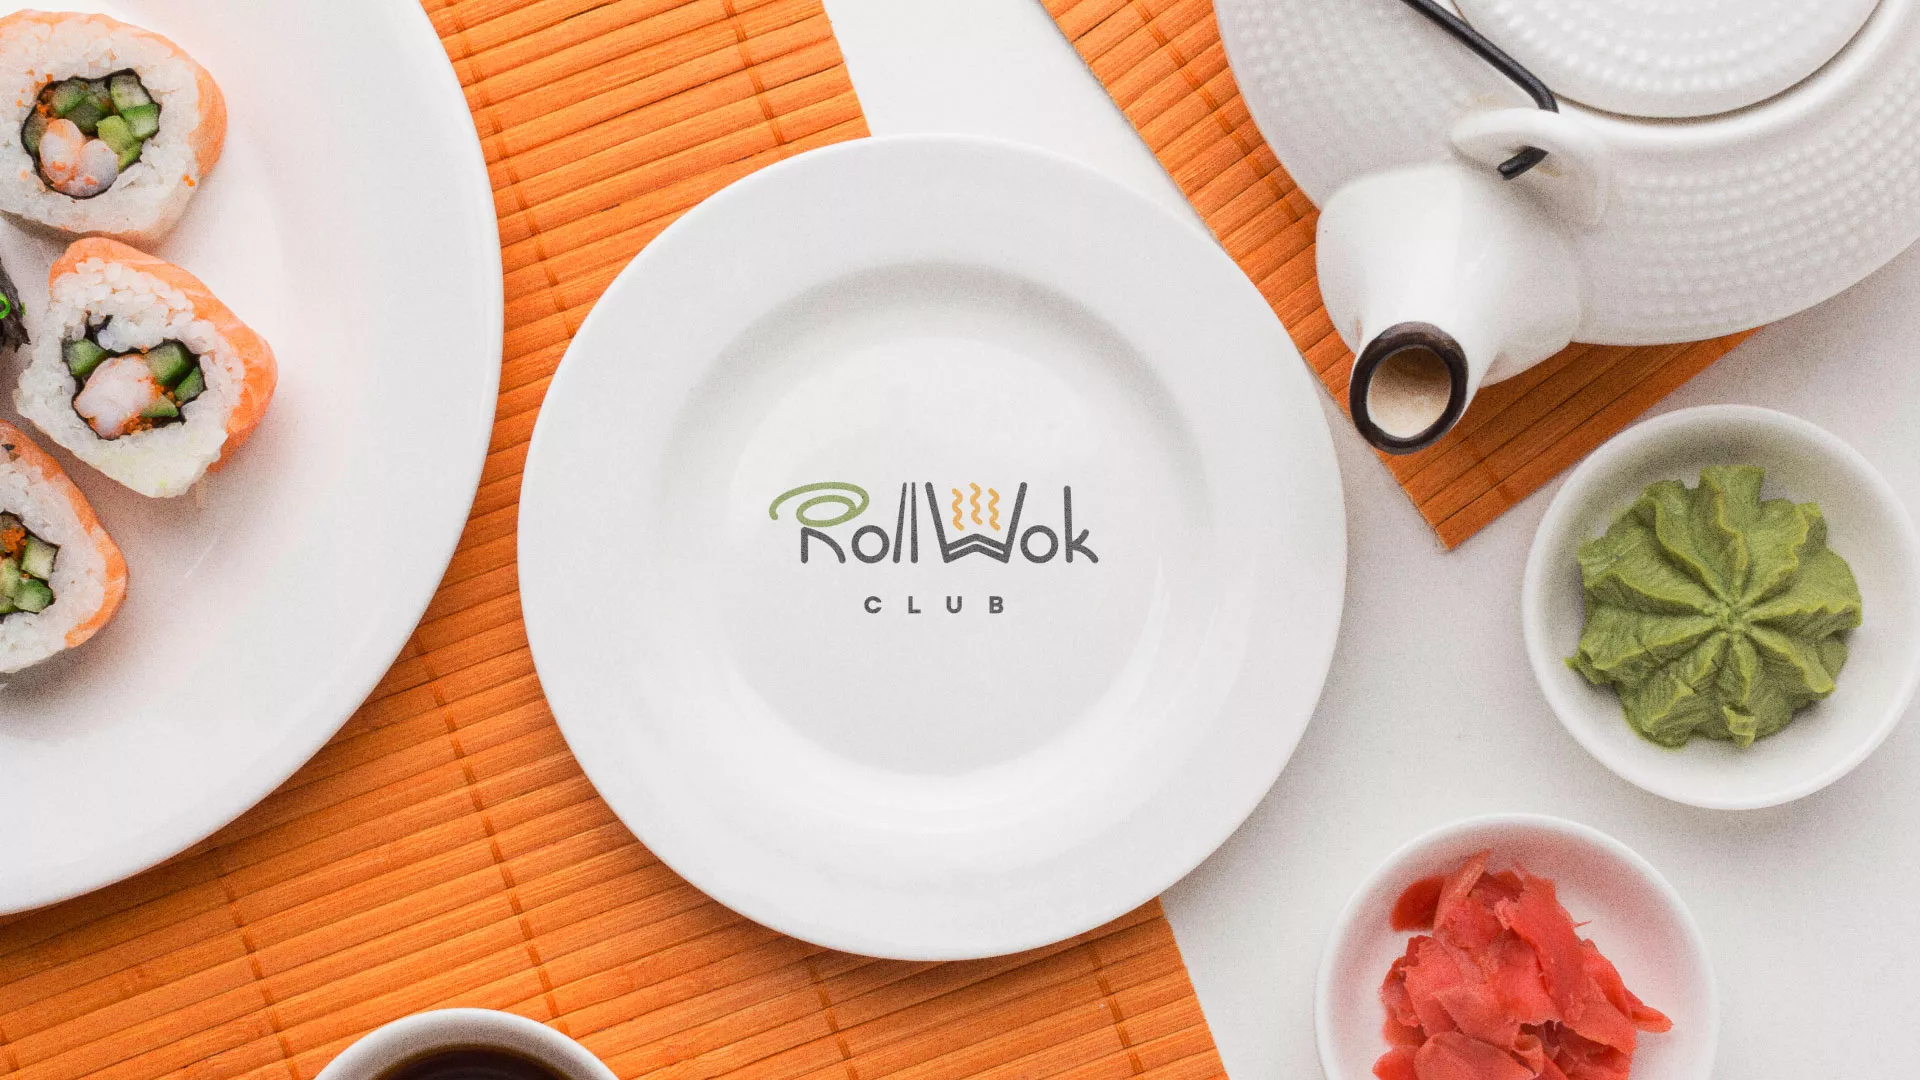 Разработка логотипа и фирменного стиля суши-бара «Roll Wok Club» в Тихвине